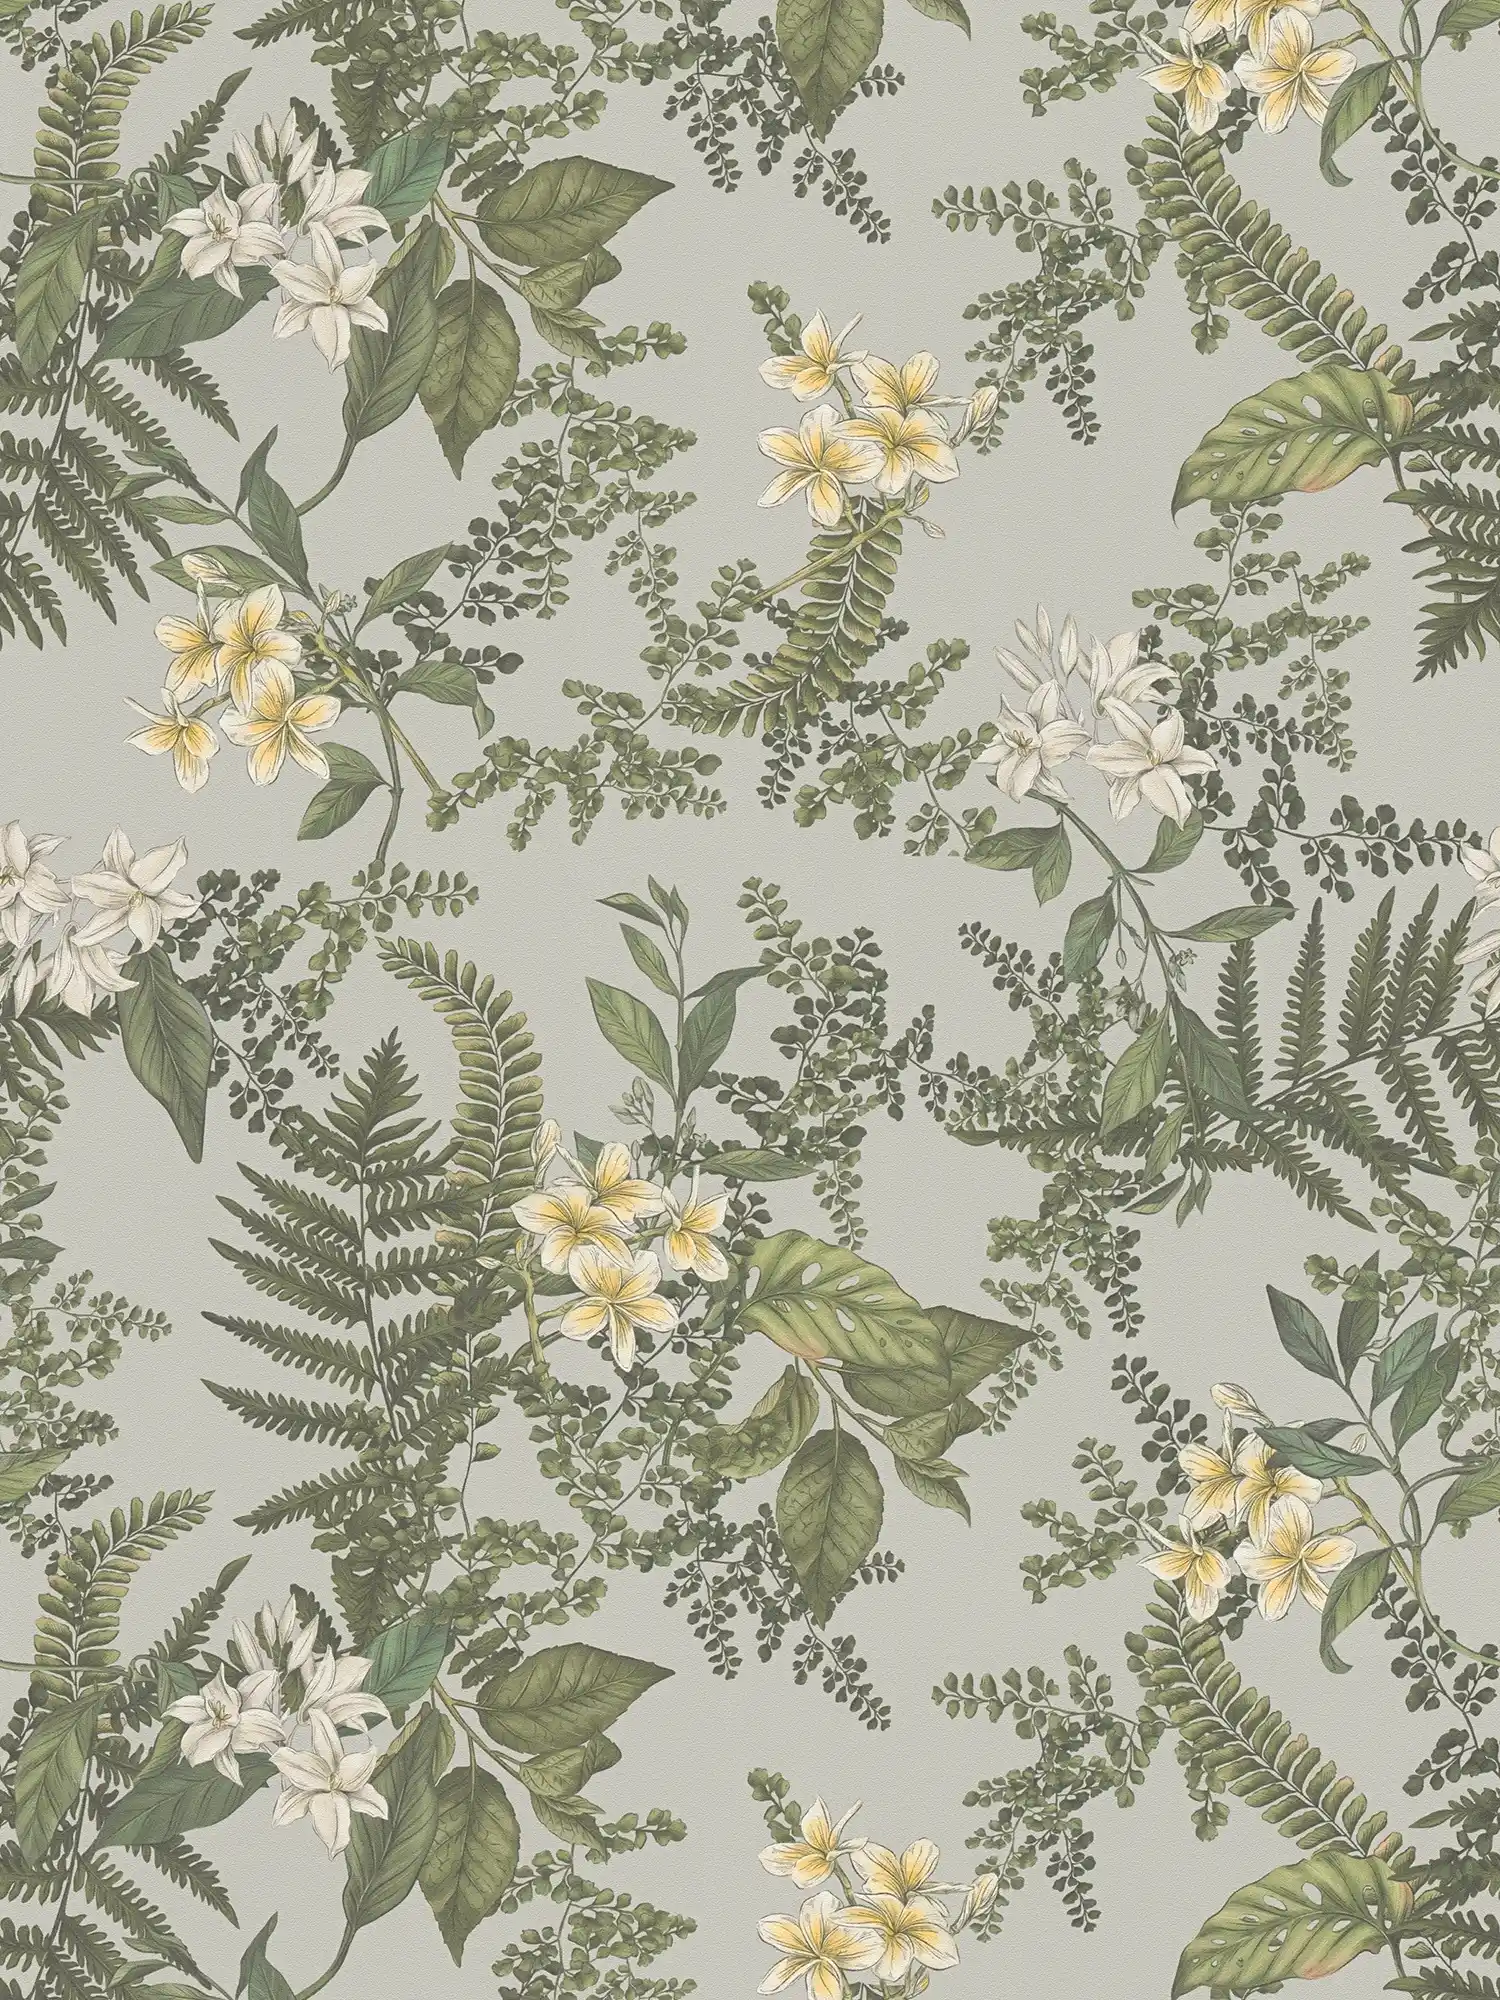 papier peint en papier moderne style floral avec fleurs & herbes structuré mat - gris, vert foncé, blanc
